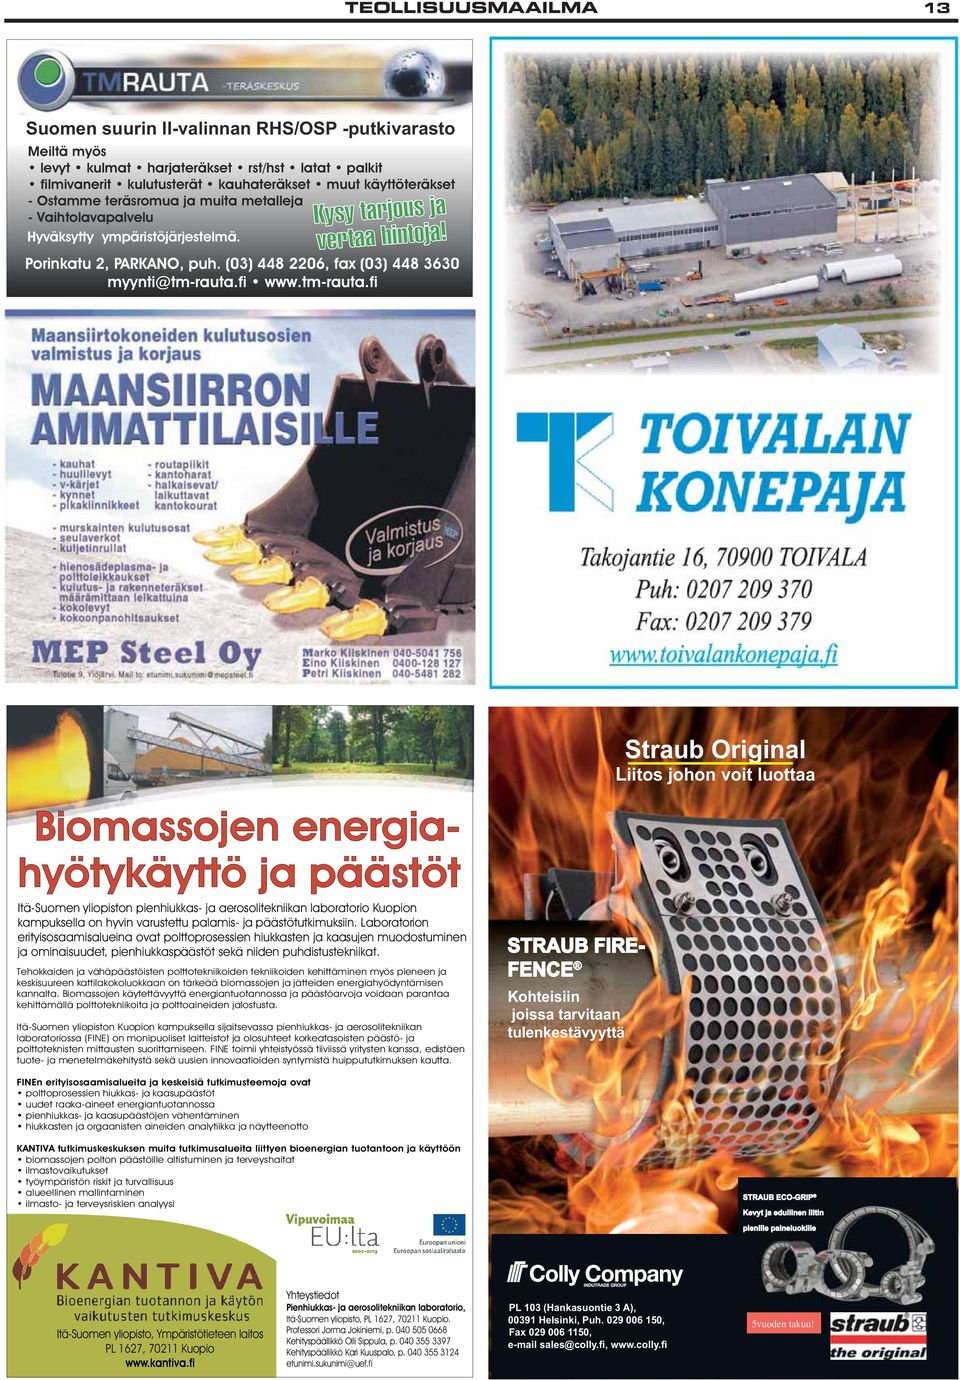 tm-rauta.fi Biomassojen energiahyötykäyttö ja päästöt Itä-Suomen yliopiston pienhiukkas- ja aerosolitekniikan laboratorio Kuopion kampuksella on hyvin varustettu palamis- ja päästötutkimuksiin.